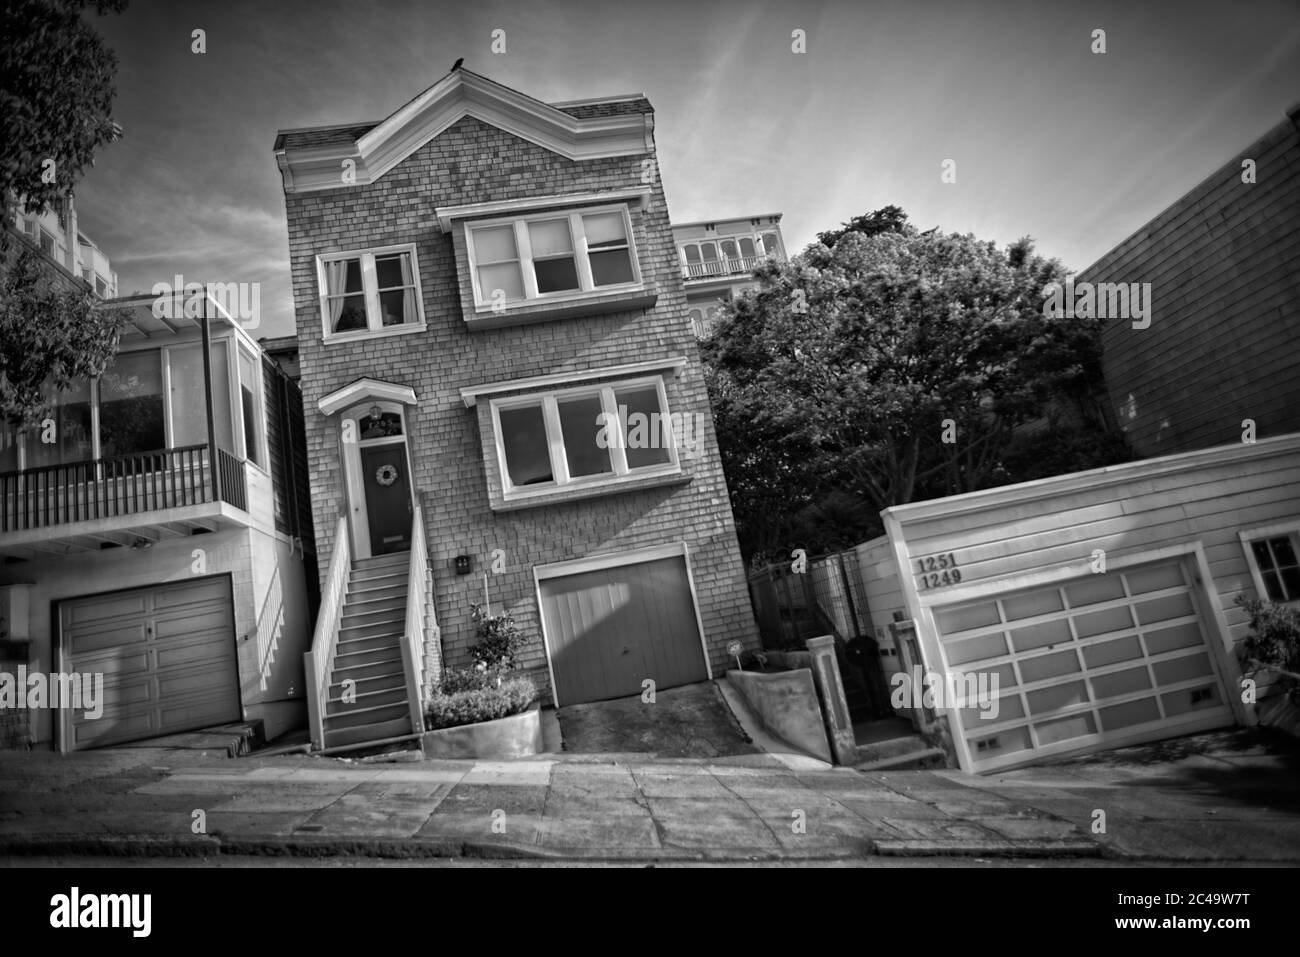 An einigen Orten in San Francisco findet man sehr seltsame Stadthäuser. Warum bauten sie diagonal? Ich weiß nicht :-D Stockfoto